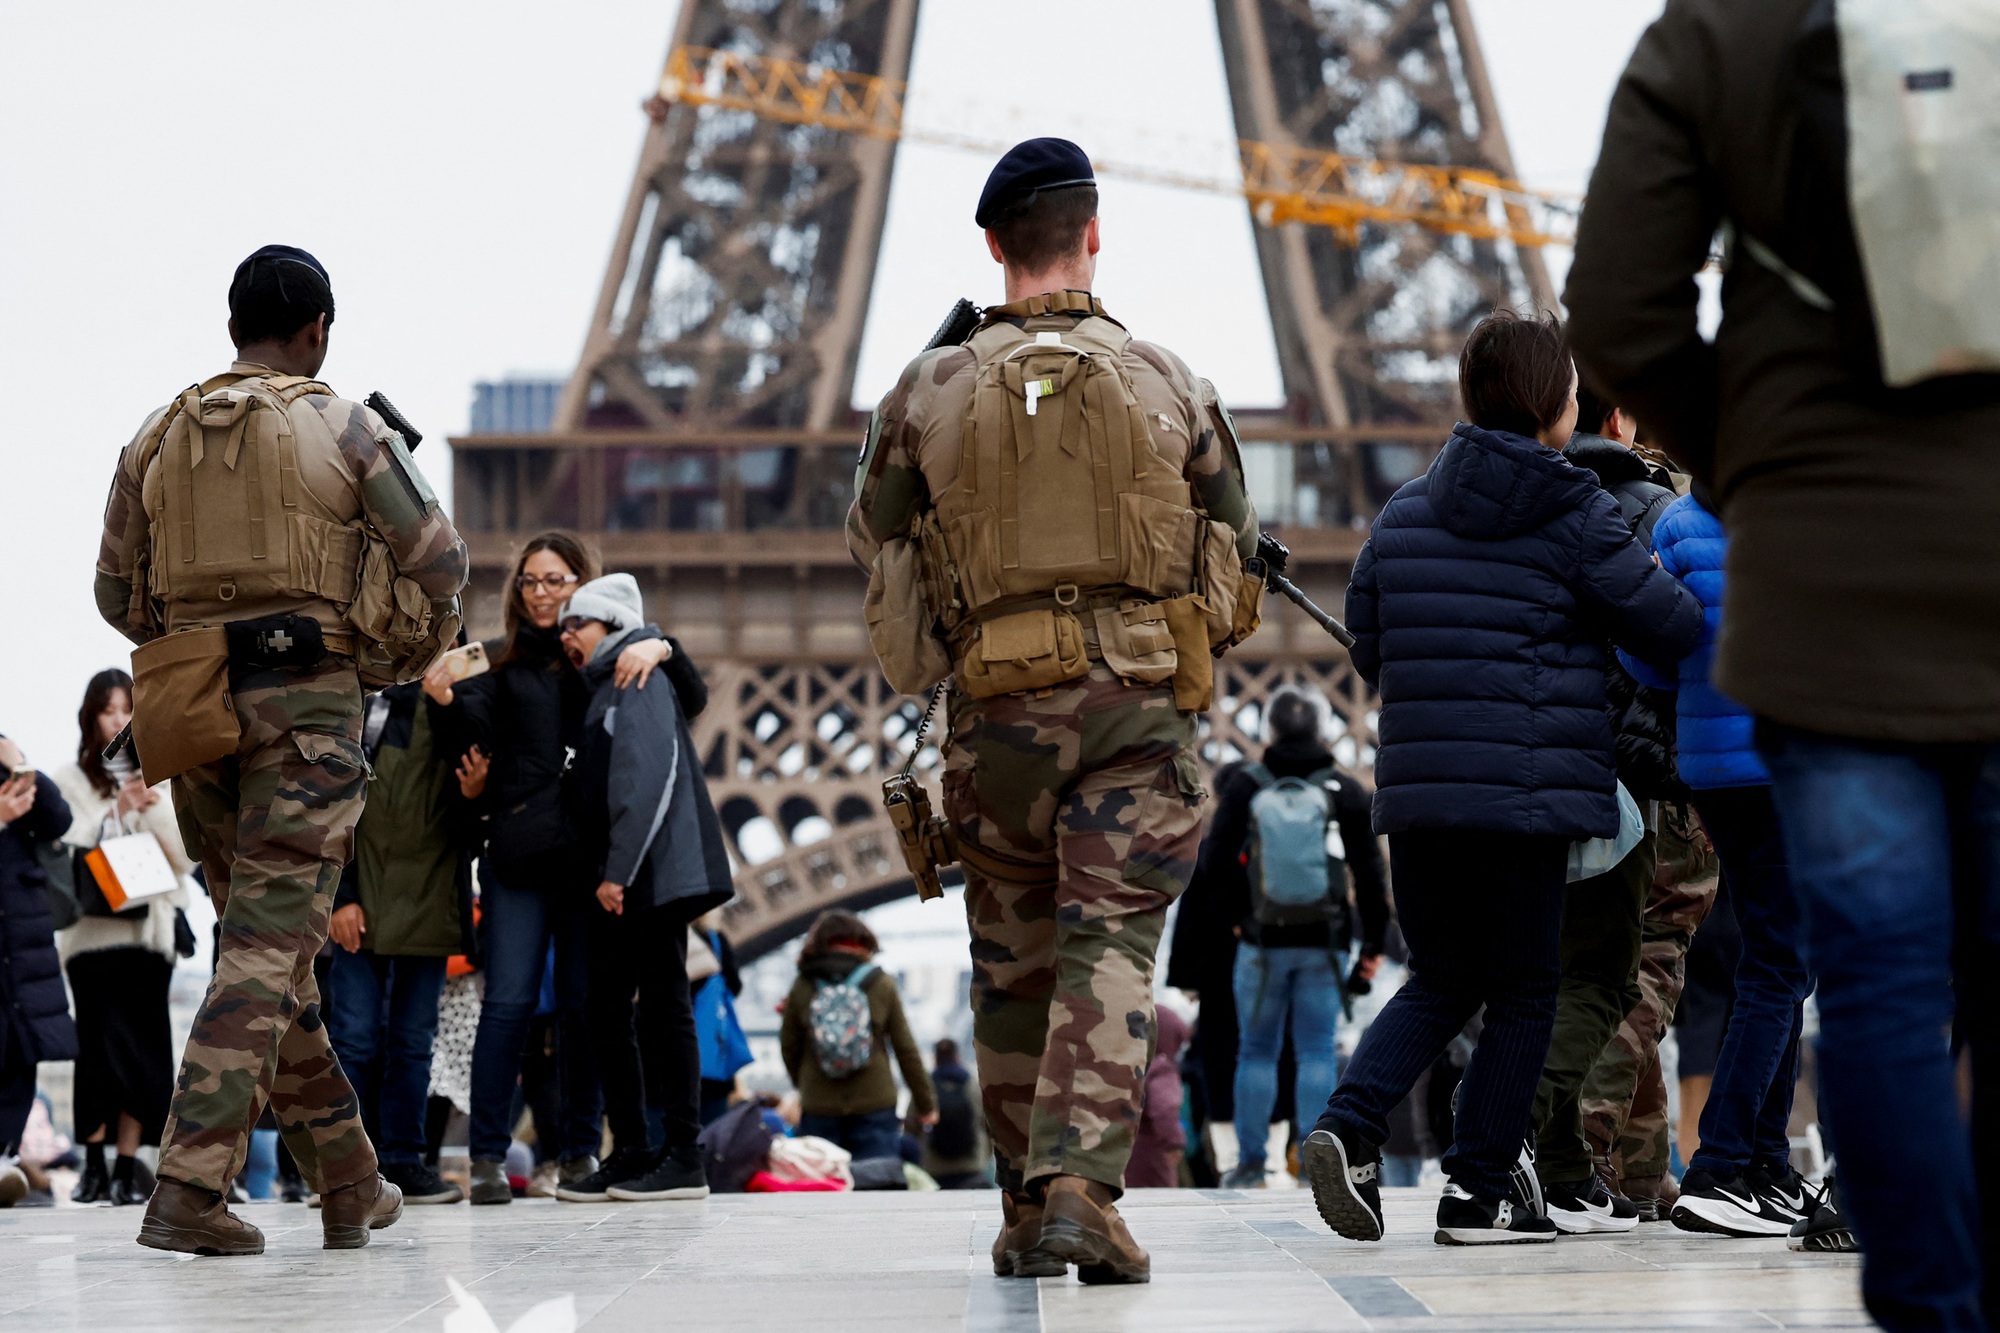 Binh sĩ tuần tra ở thủ đô Paris hôm 25-3 sau khi Pháp nâng cảnh báo khủng bố lên mức cao nhất Ảnh: REUTERS